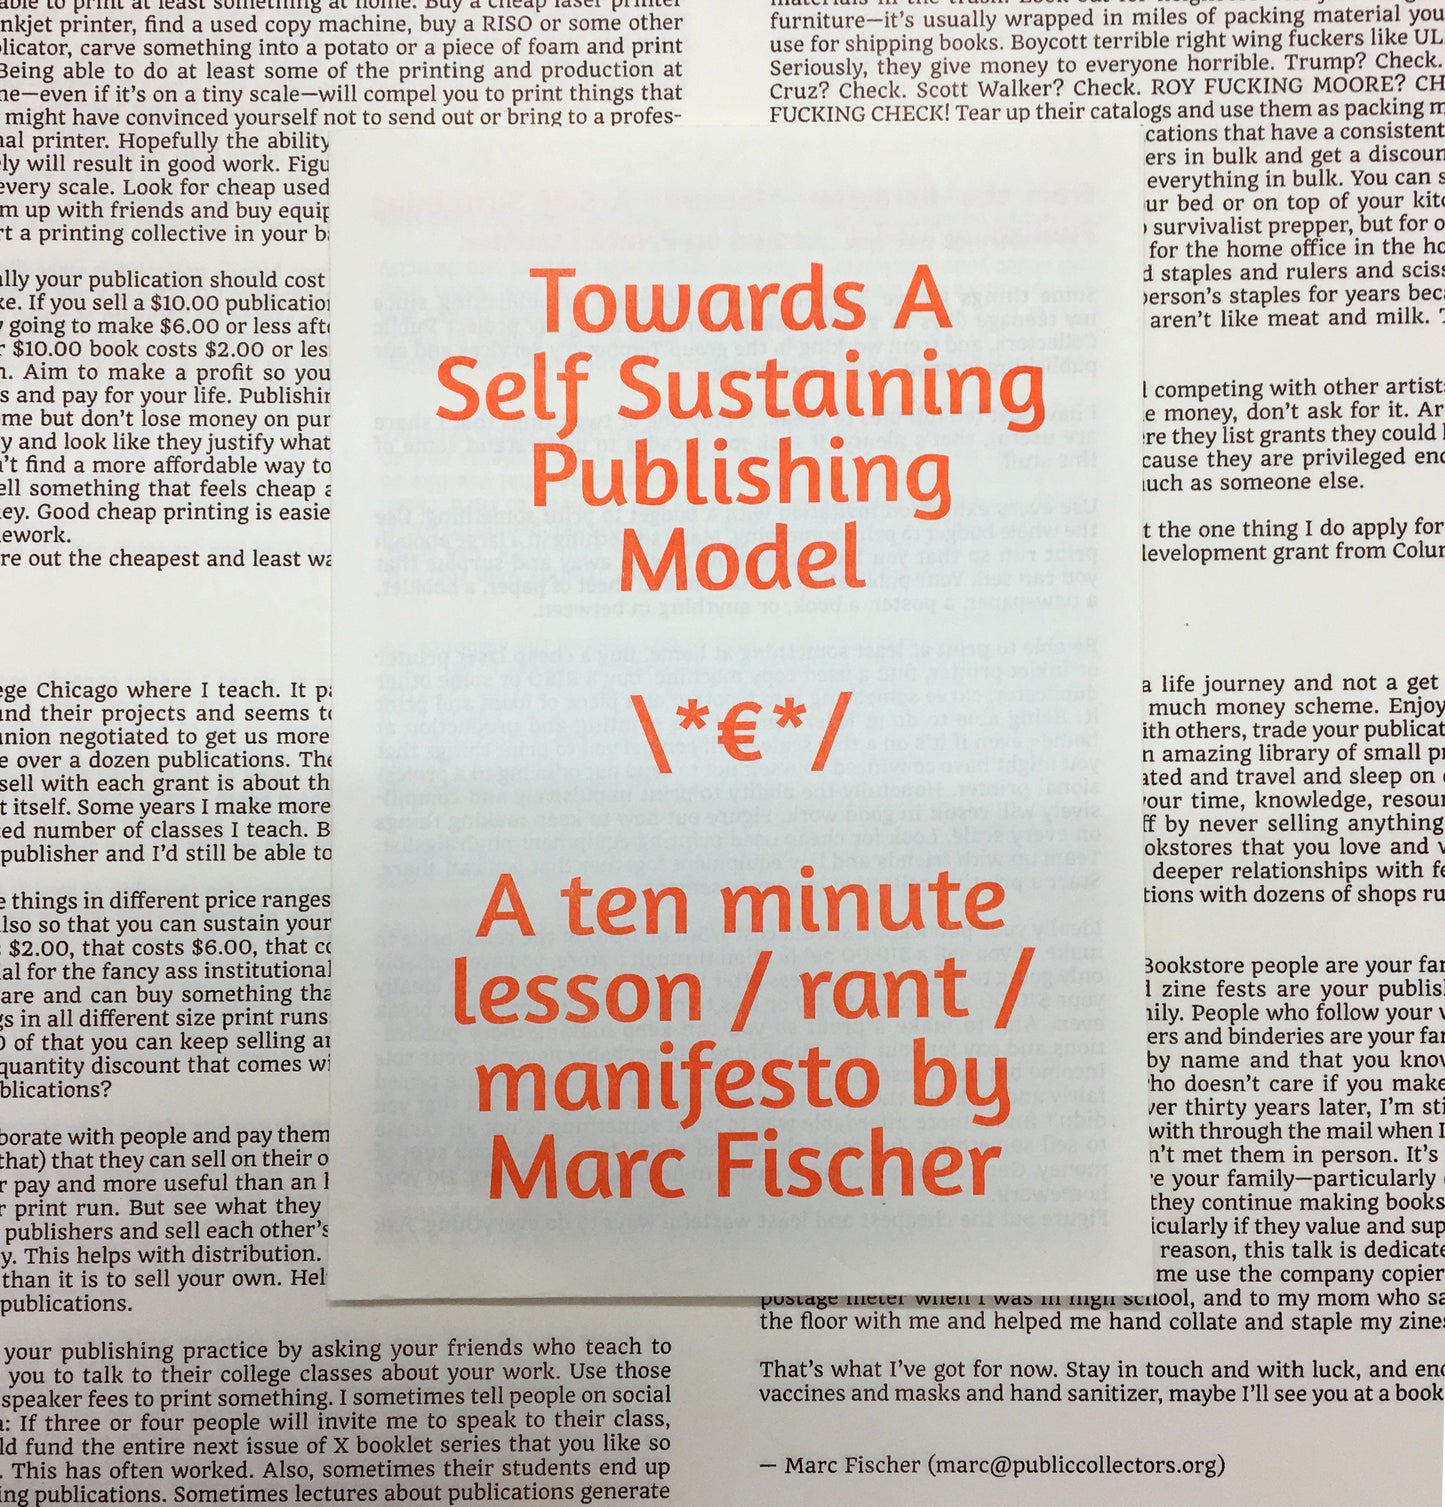 Towards A Self Sustaining Publishing Model